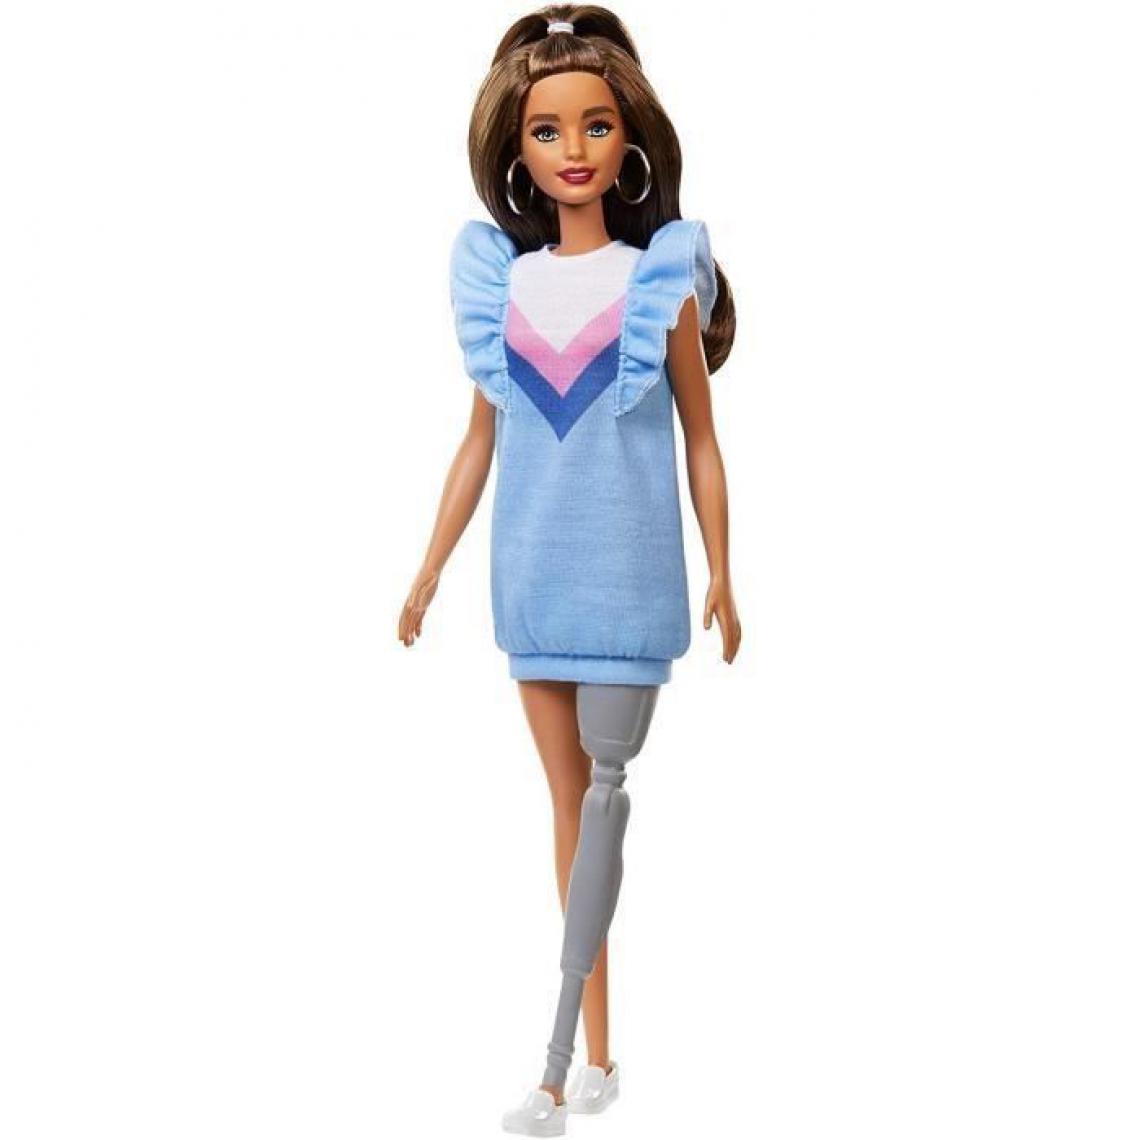 Mattel - Barbie - Barbie Fashionistas Prothese - 3 ans et + - Poupées